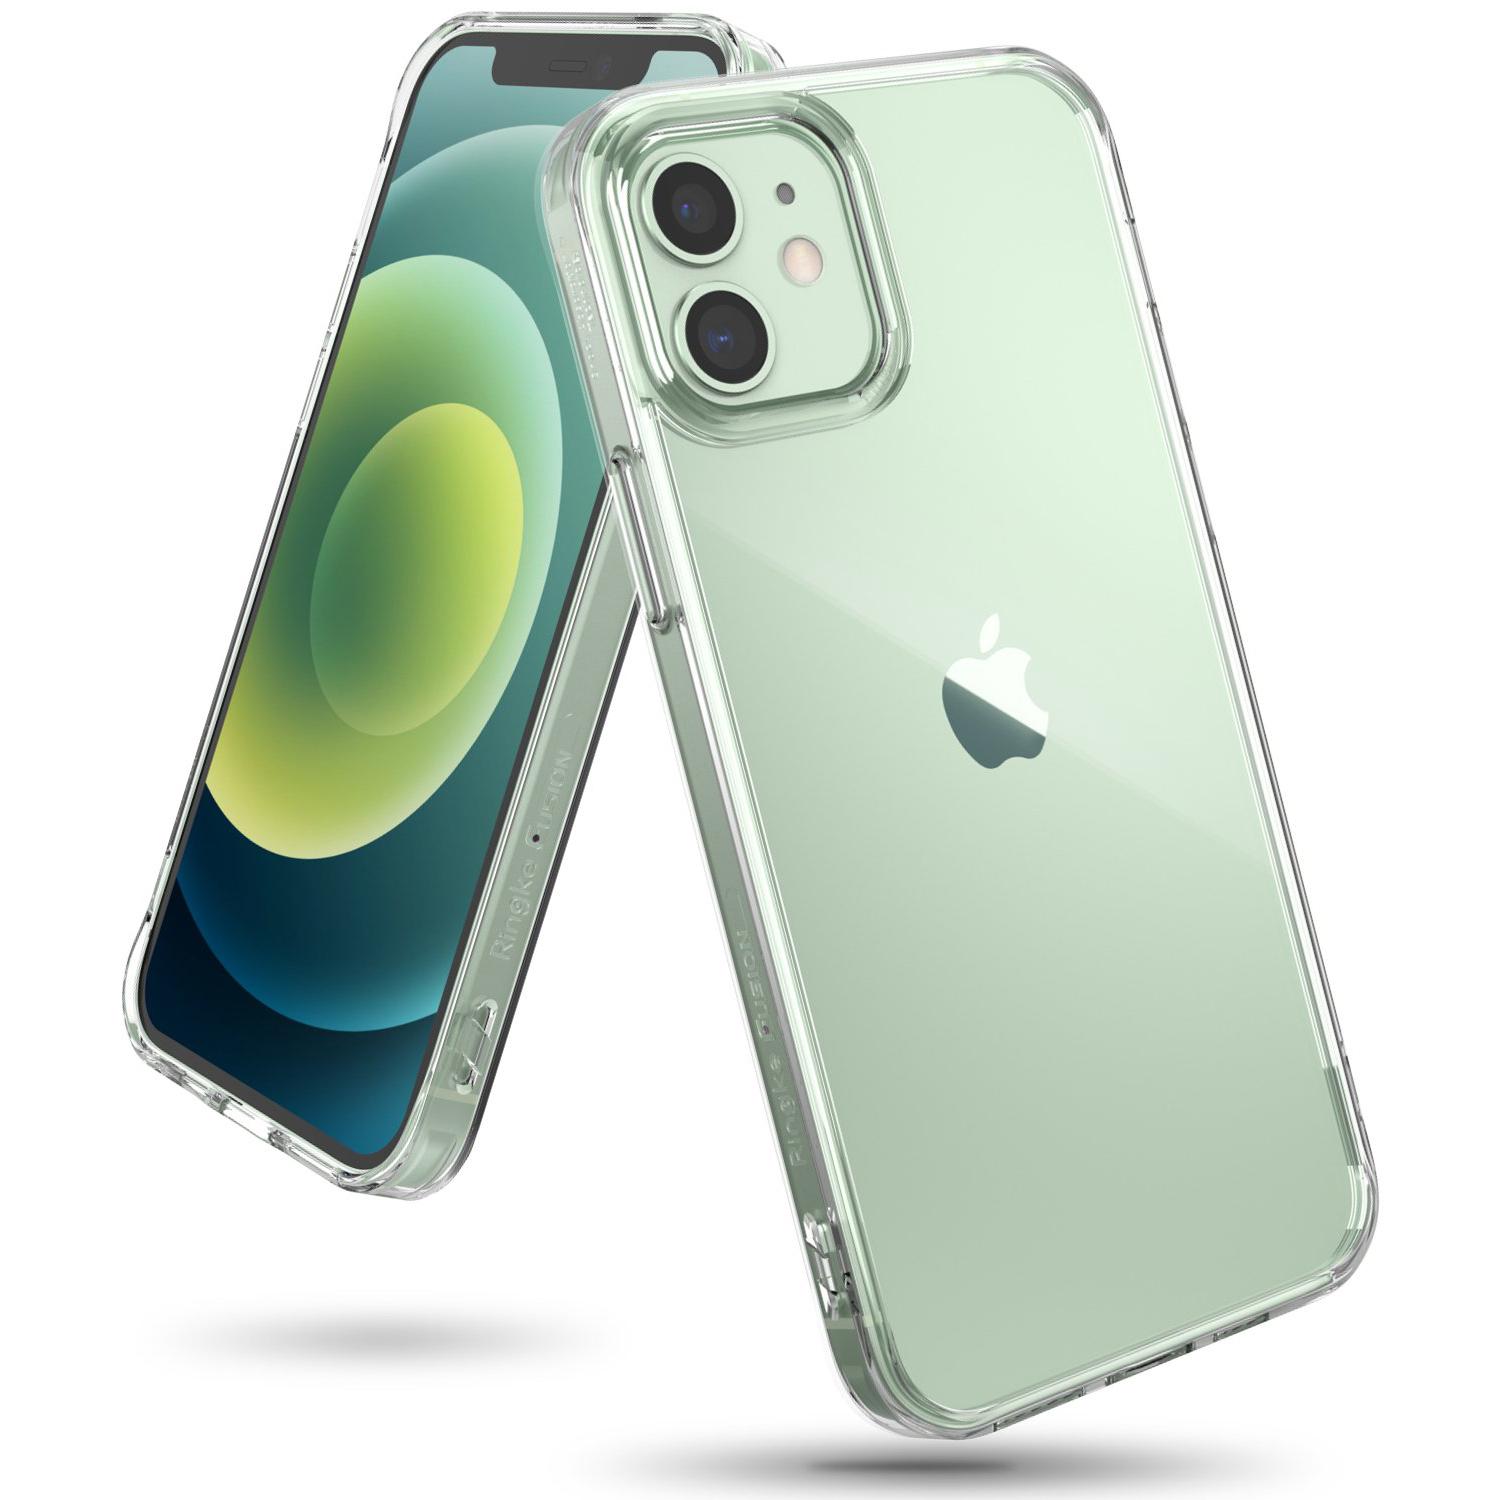 Fusion Case iPhone 12 Mini Clear